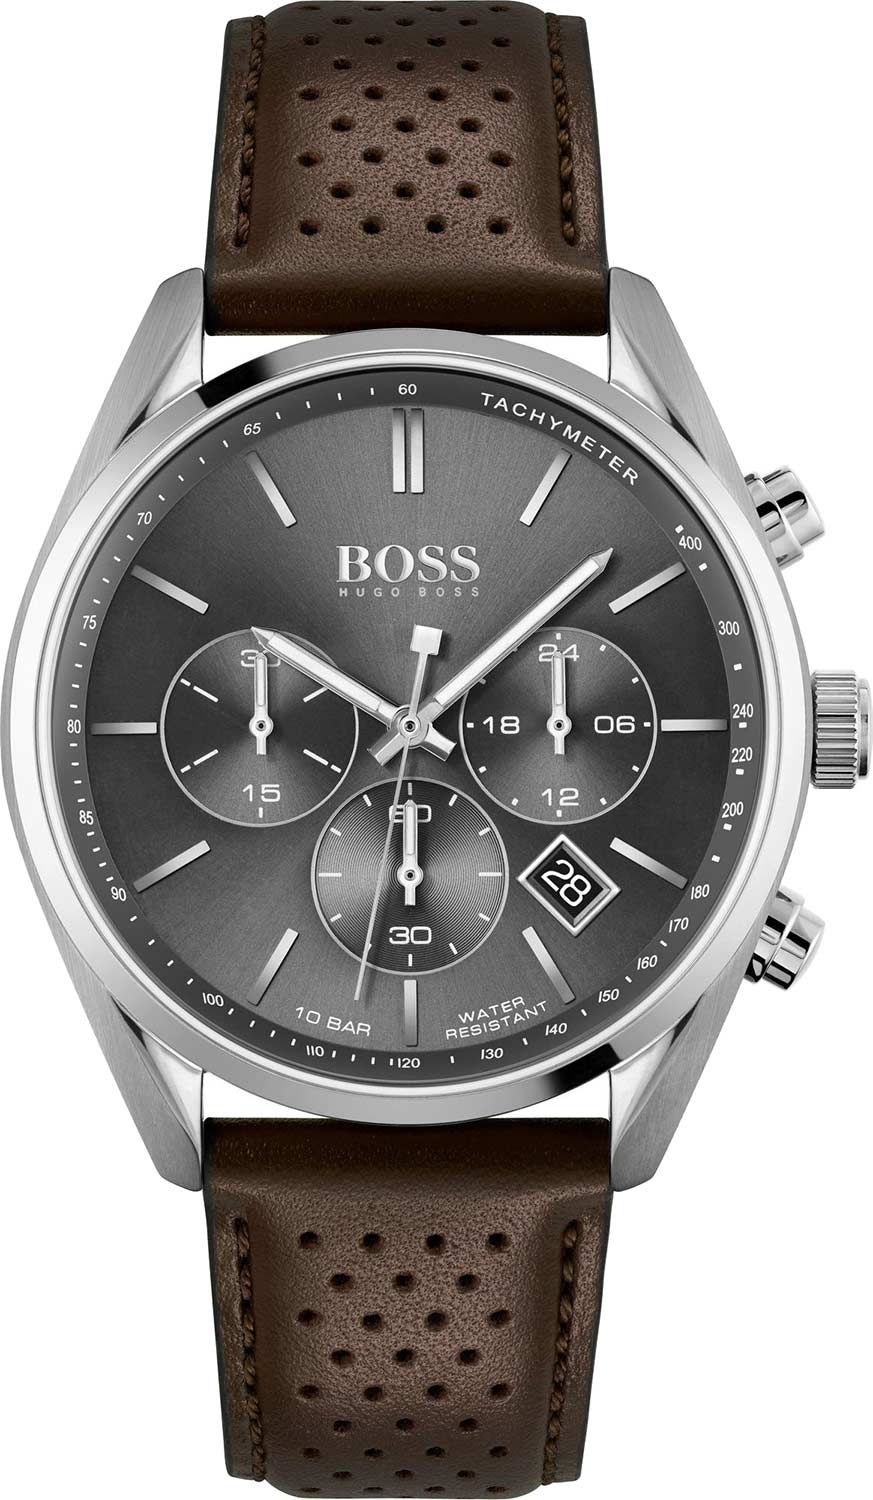 Наручные часы унисекс HUGO BOSS HB1513815 коричневые